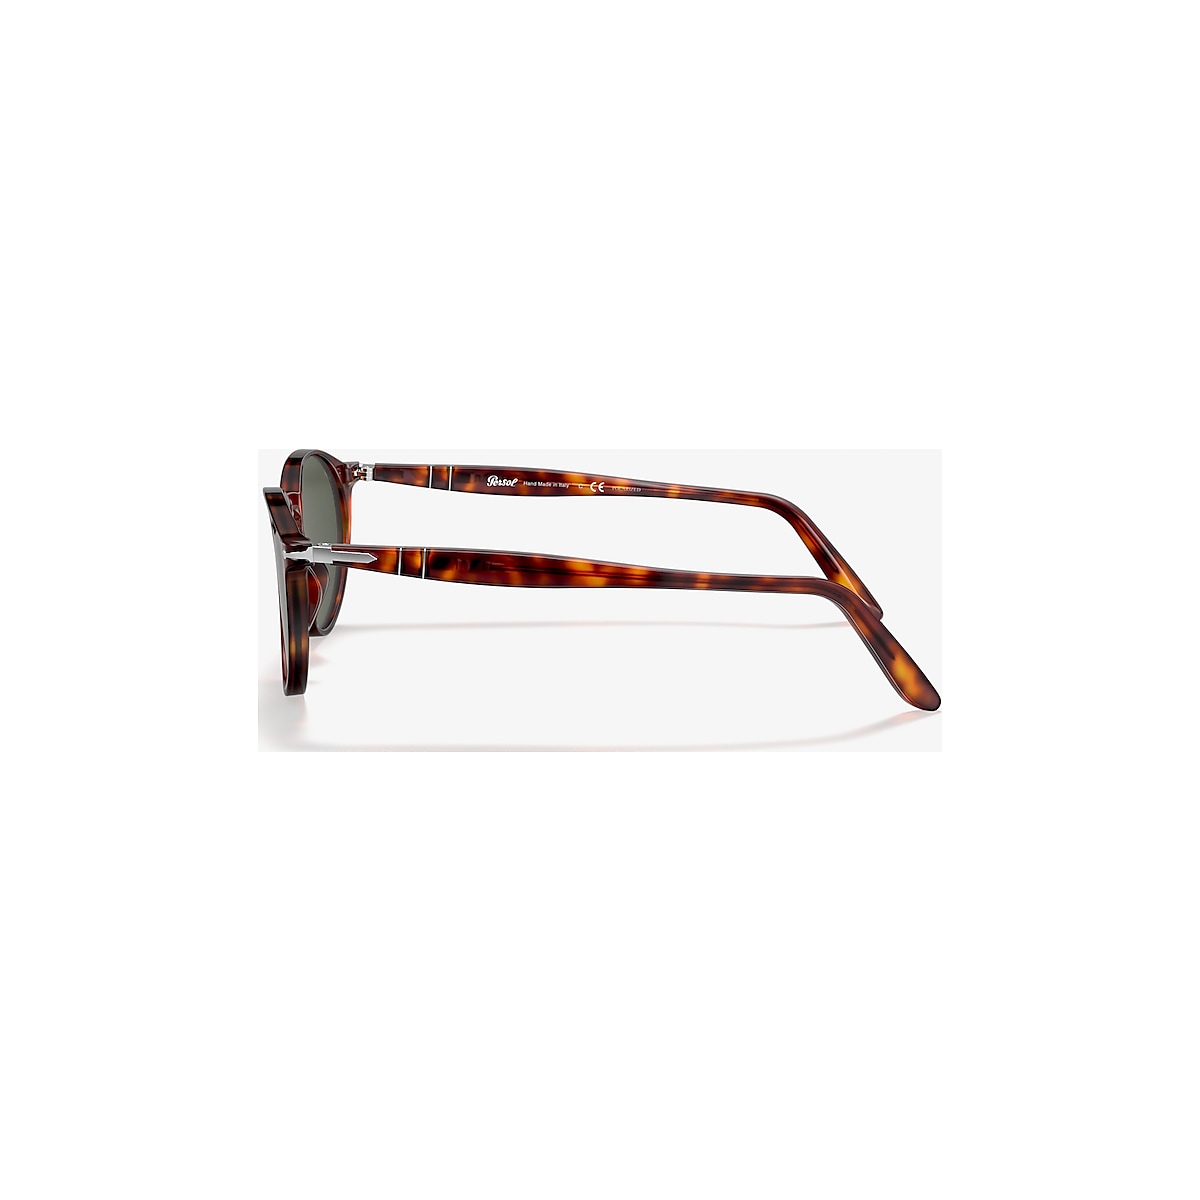 Persol Mens Sunglasses Tortoise/Green Acetate Non-Polarized 0PO3092SM 90153  50mm